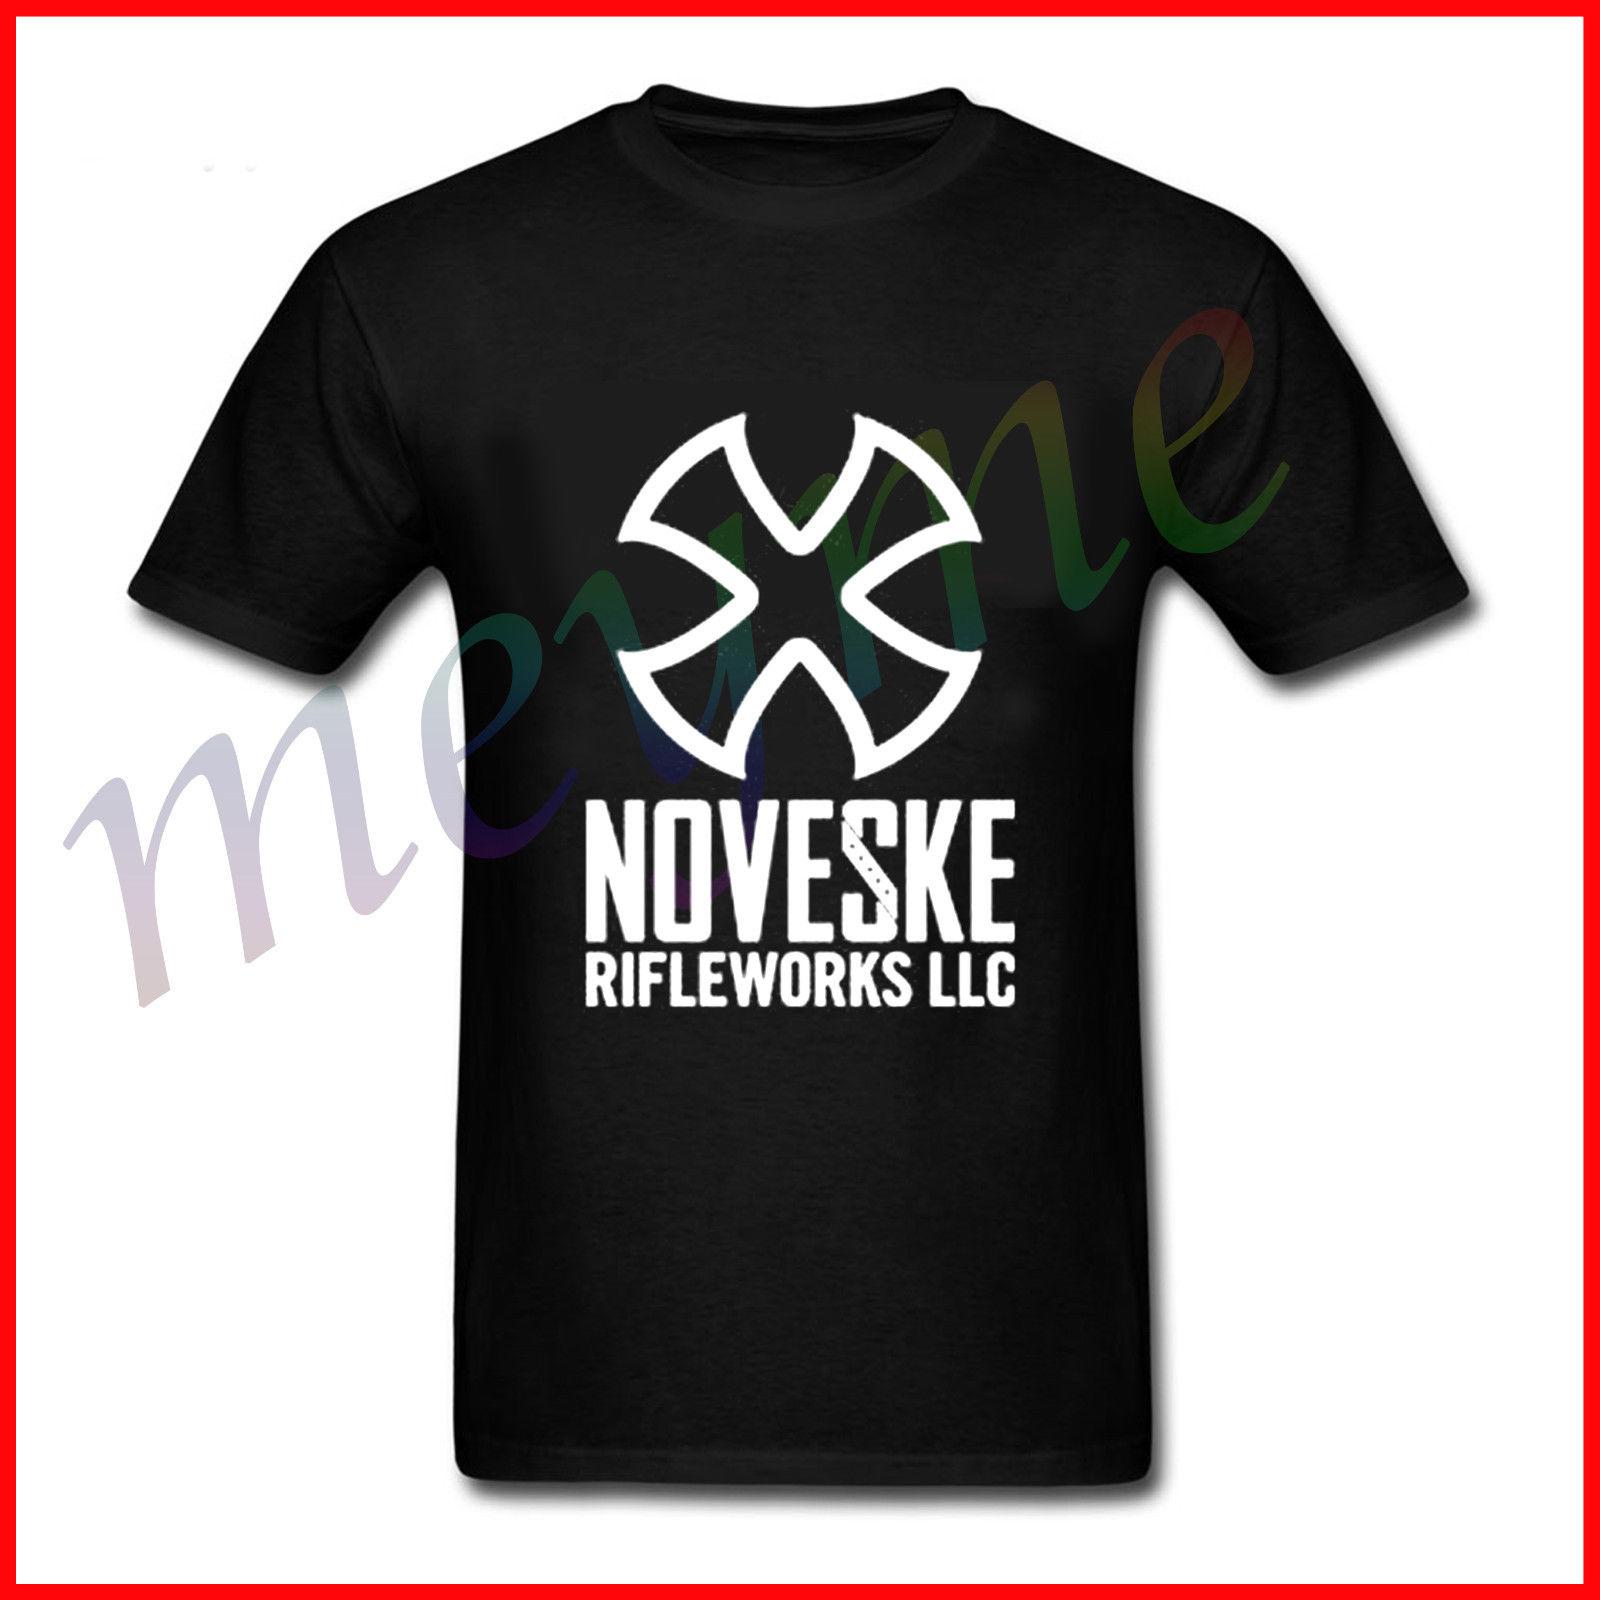 Noveske Logo - NEW 2017 Noveske Rifleworks LLC Logo T Shirt From US SIZE S M L Cool